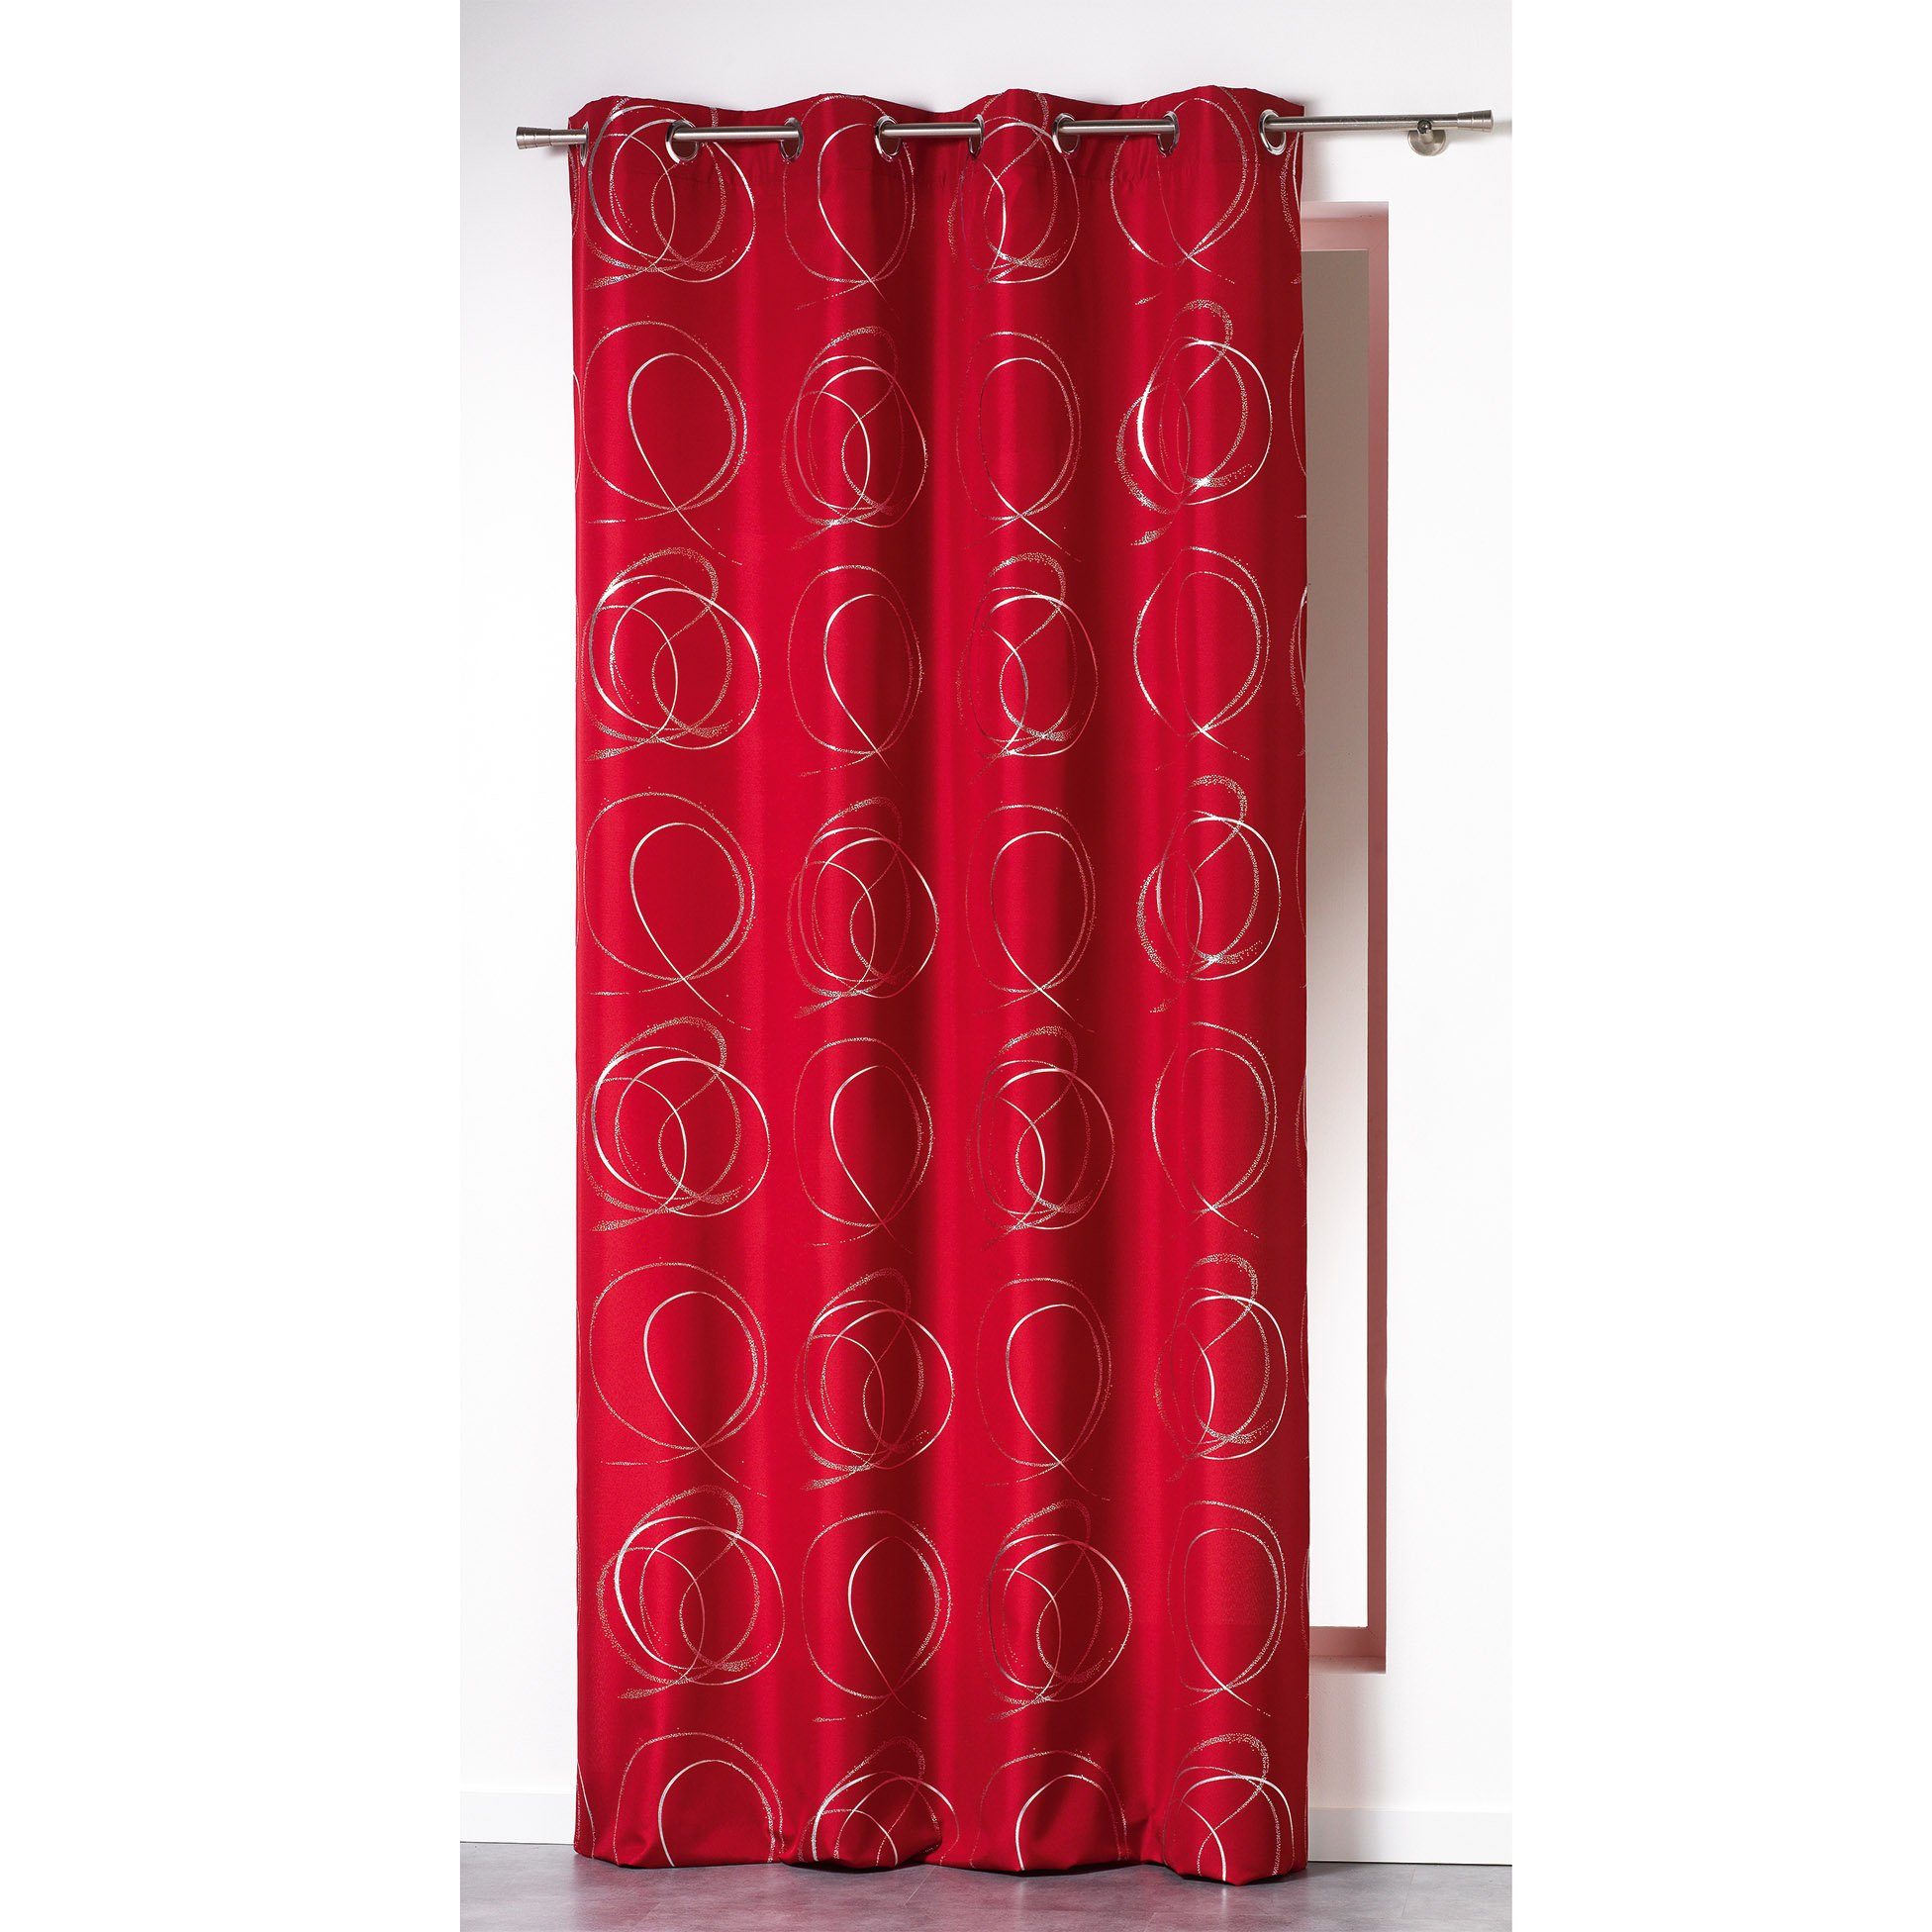 Vorhang, Douceur d'intérieur, Ösen Vorhang blickdicht 140x260cm Gardine Schal Vorhänge rot gemustert